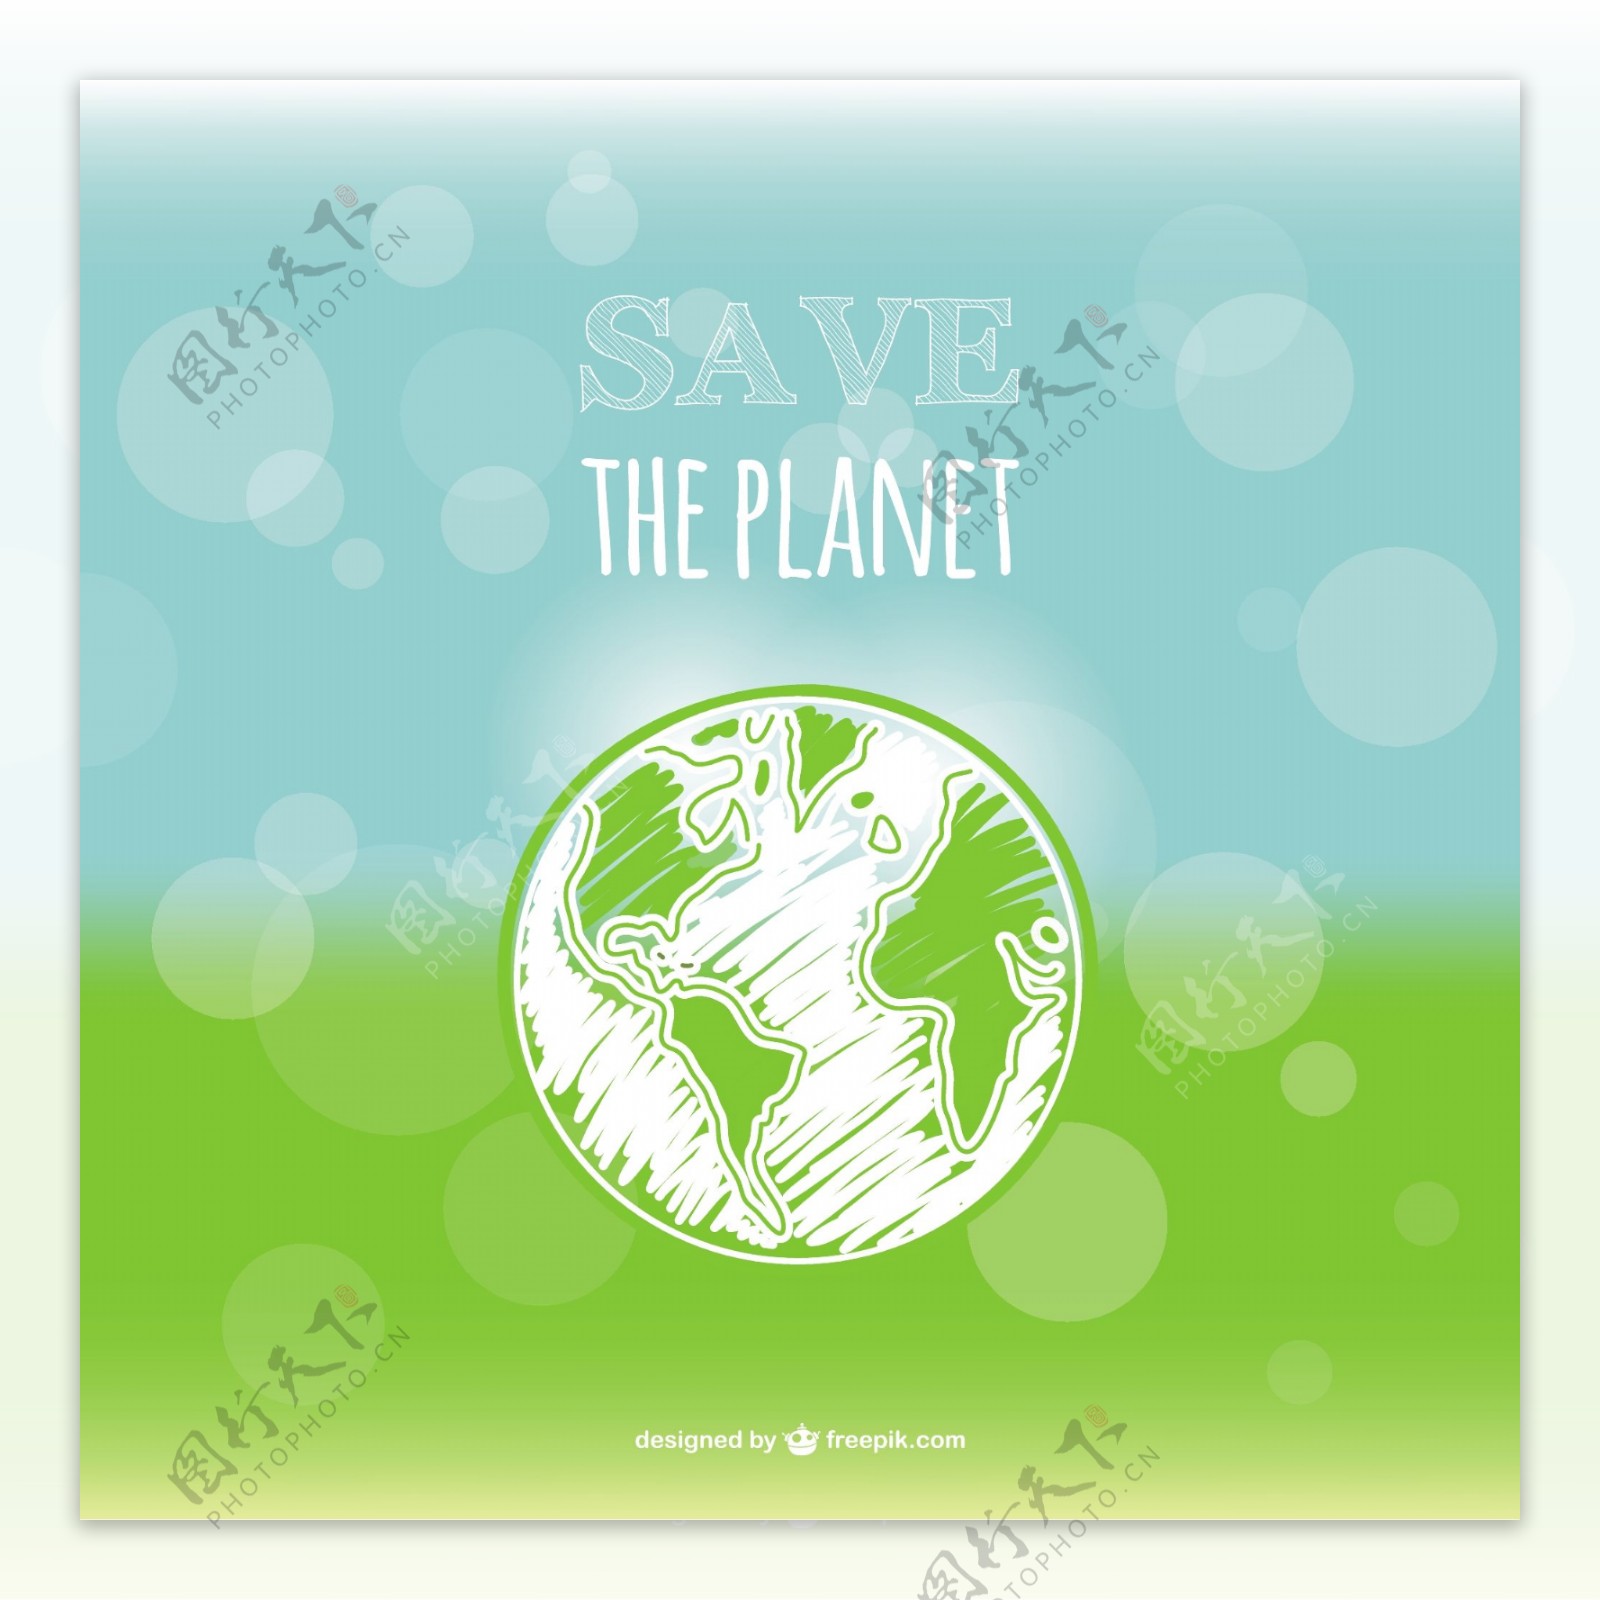 拯救地球卡与地球和背景虚化效果